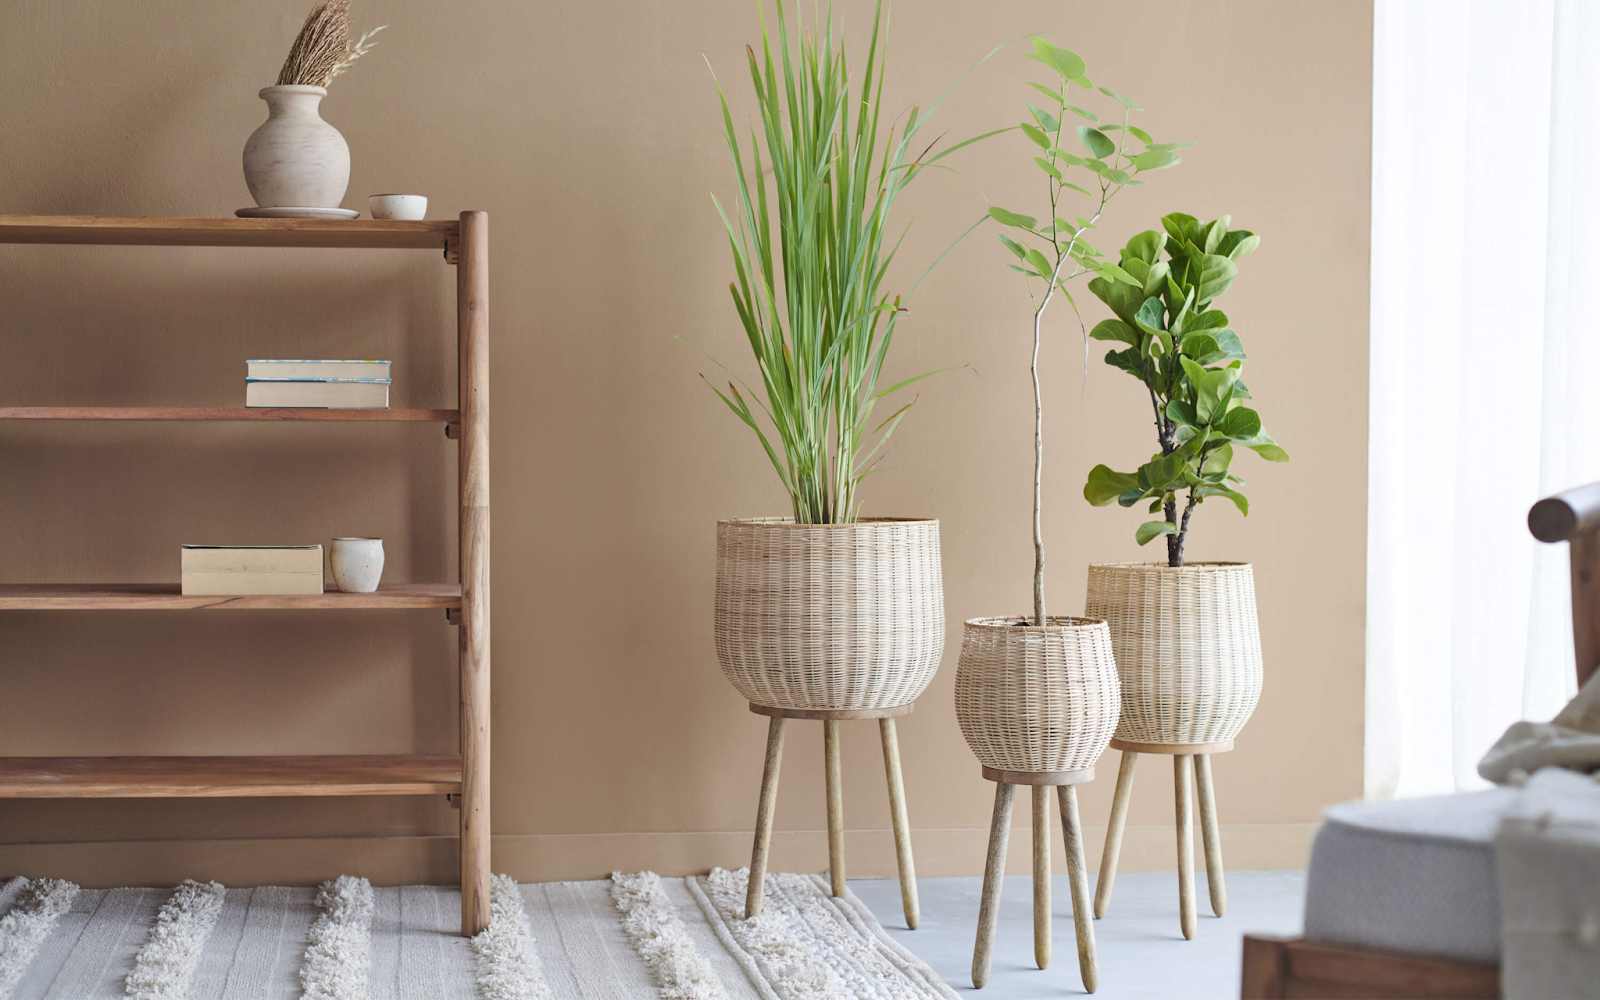 Planters for Indoor Plants in living room corner